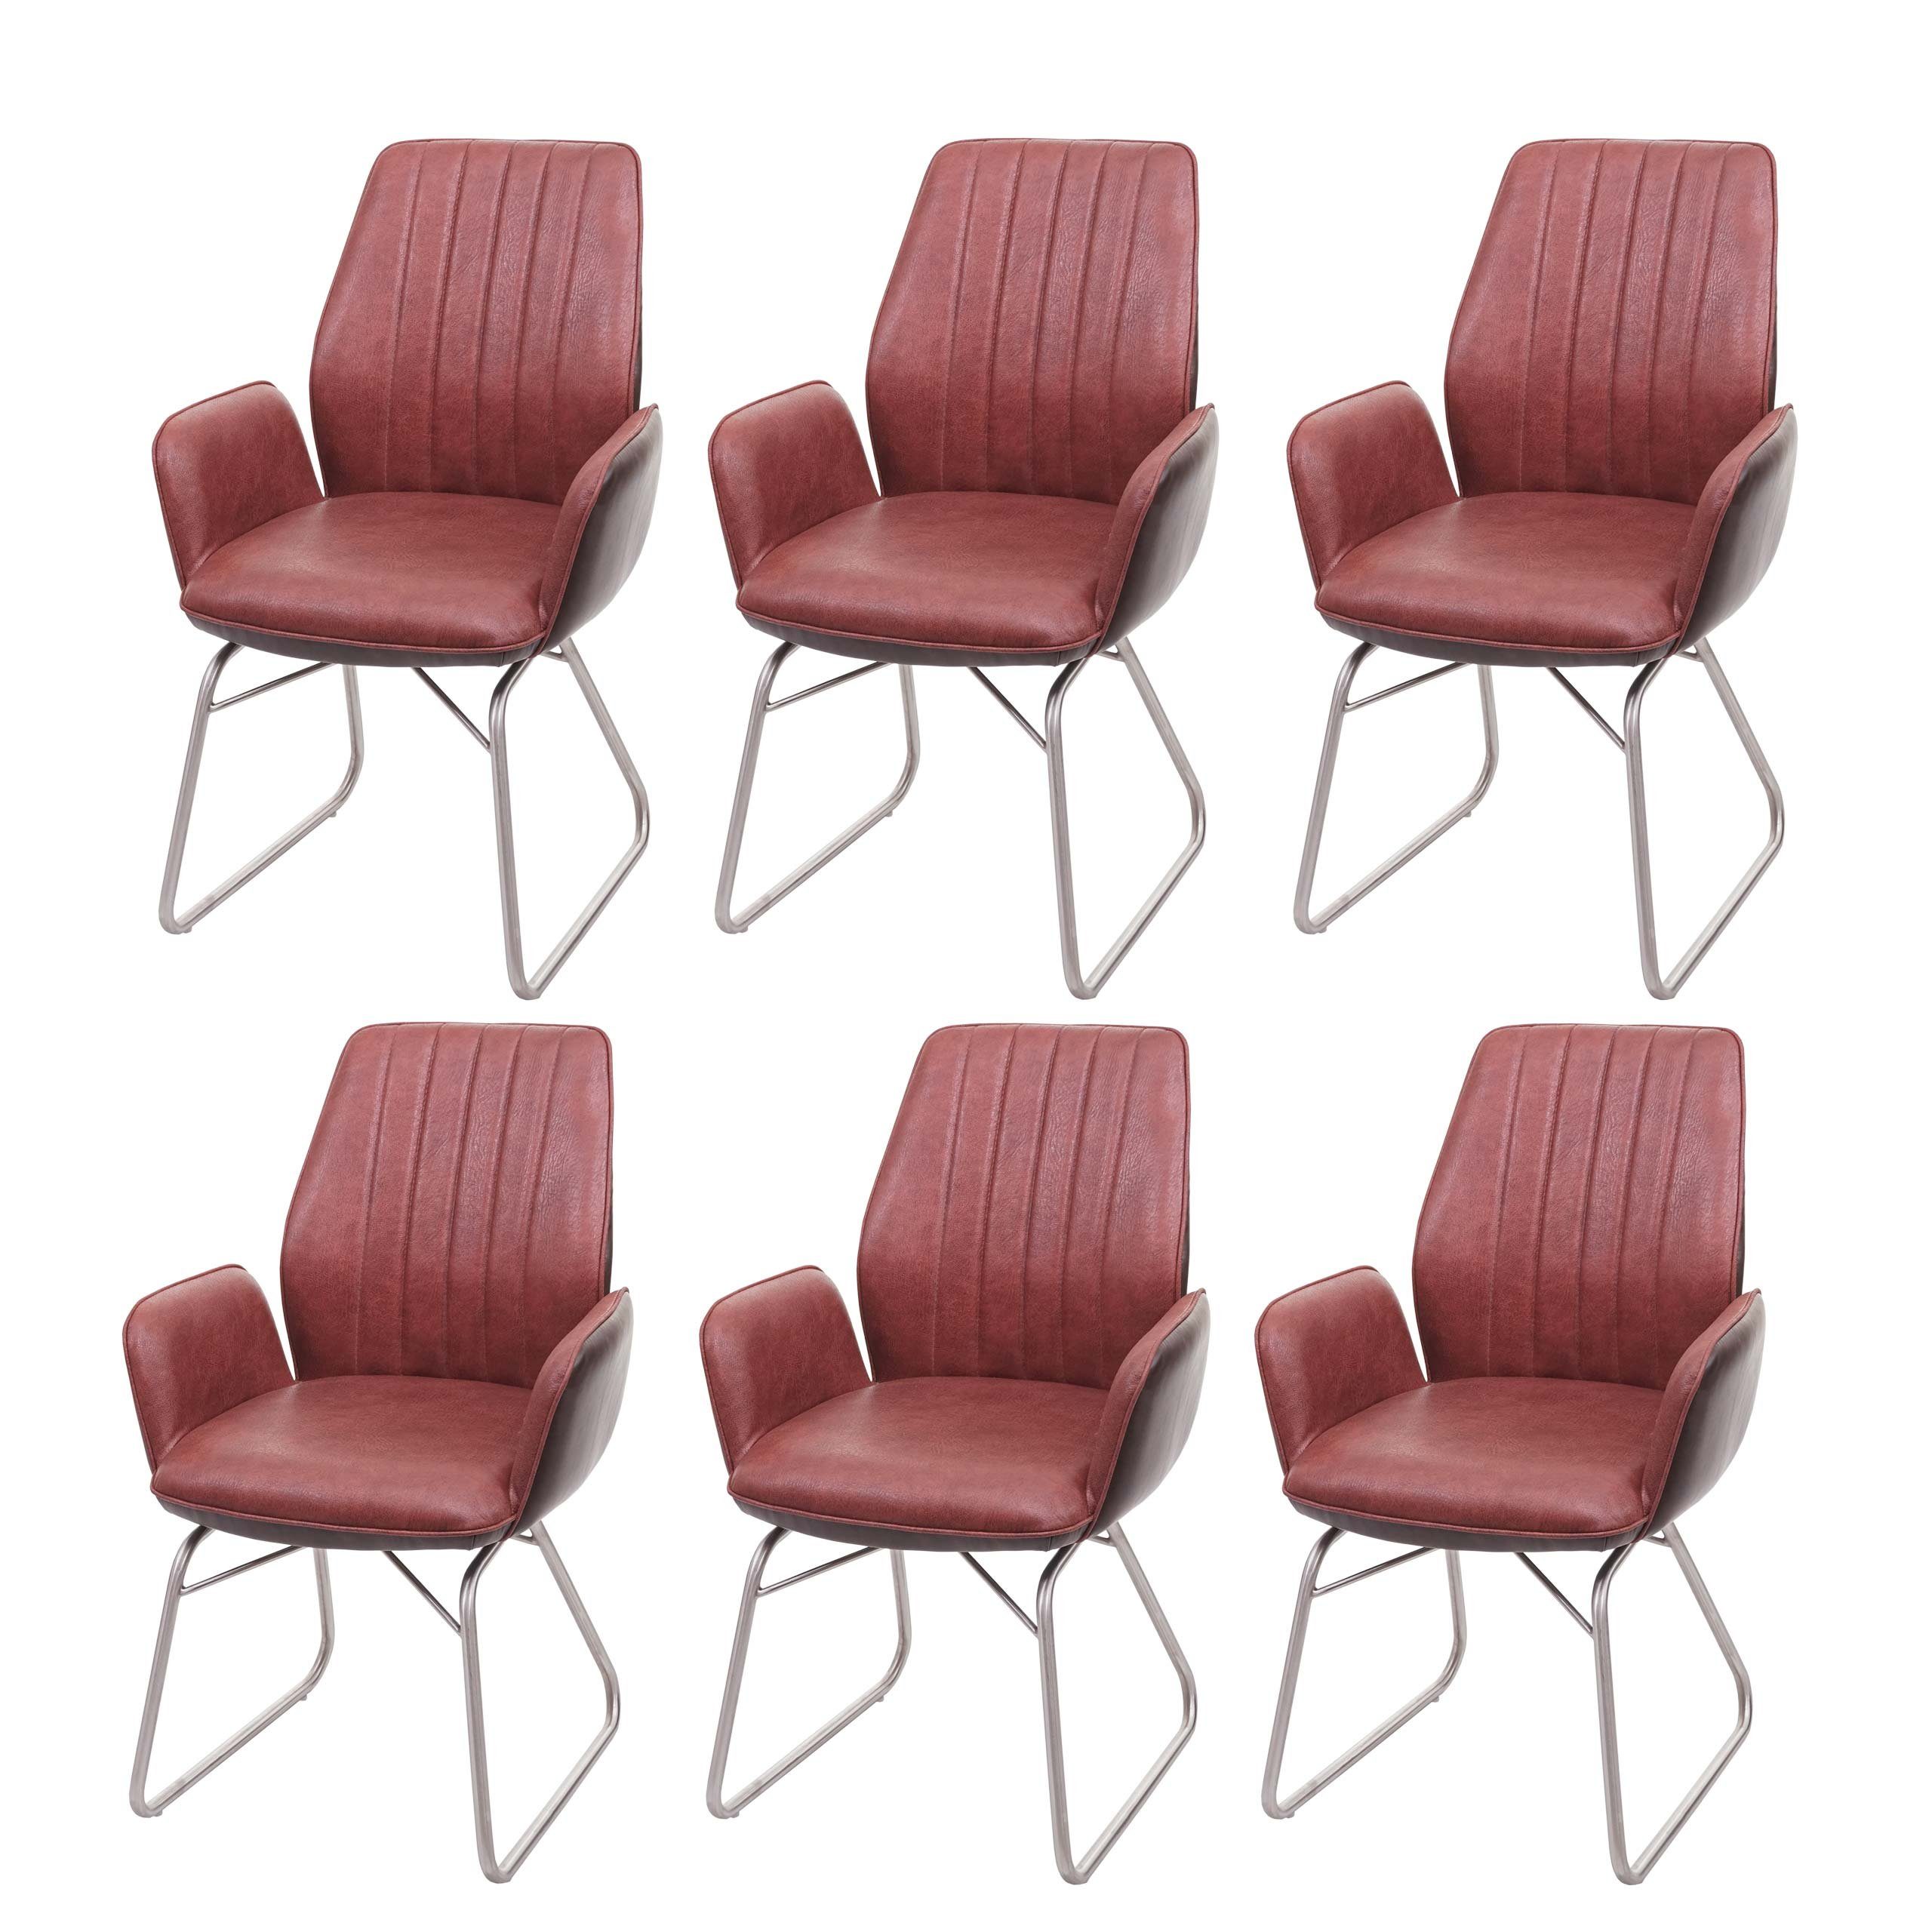 MCW Esszimmerstuhl MCW-G73-6 (Set), Wippfunktion, 6er-Set, Inklusive  Fußbodenschoner, dekorative glänzende Ziernaht | Stühle